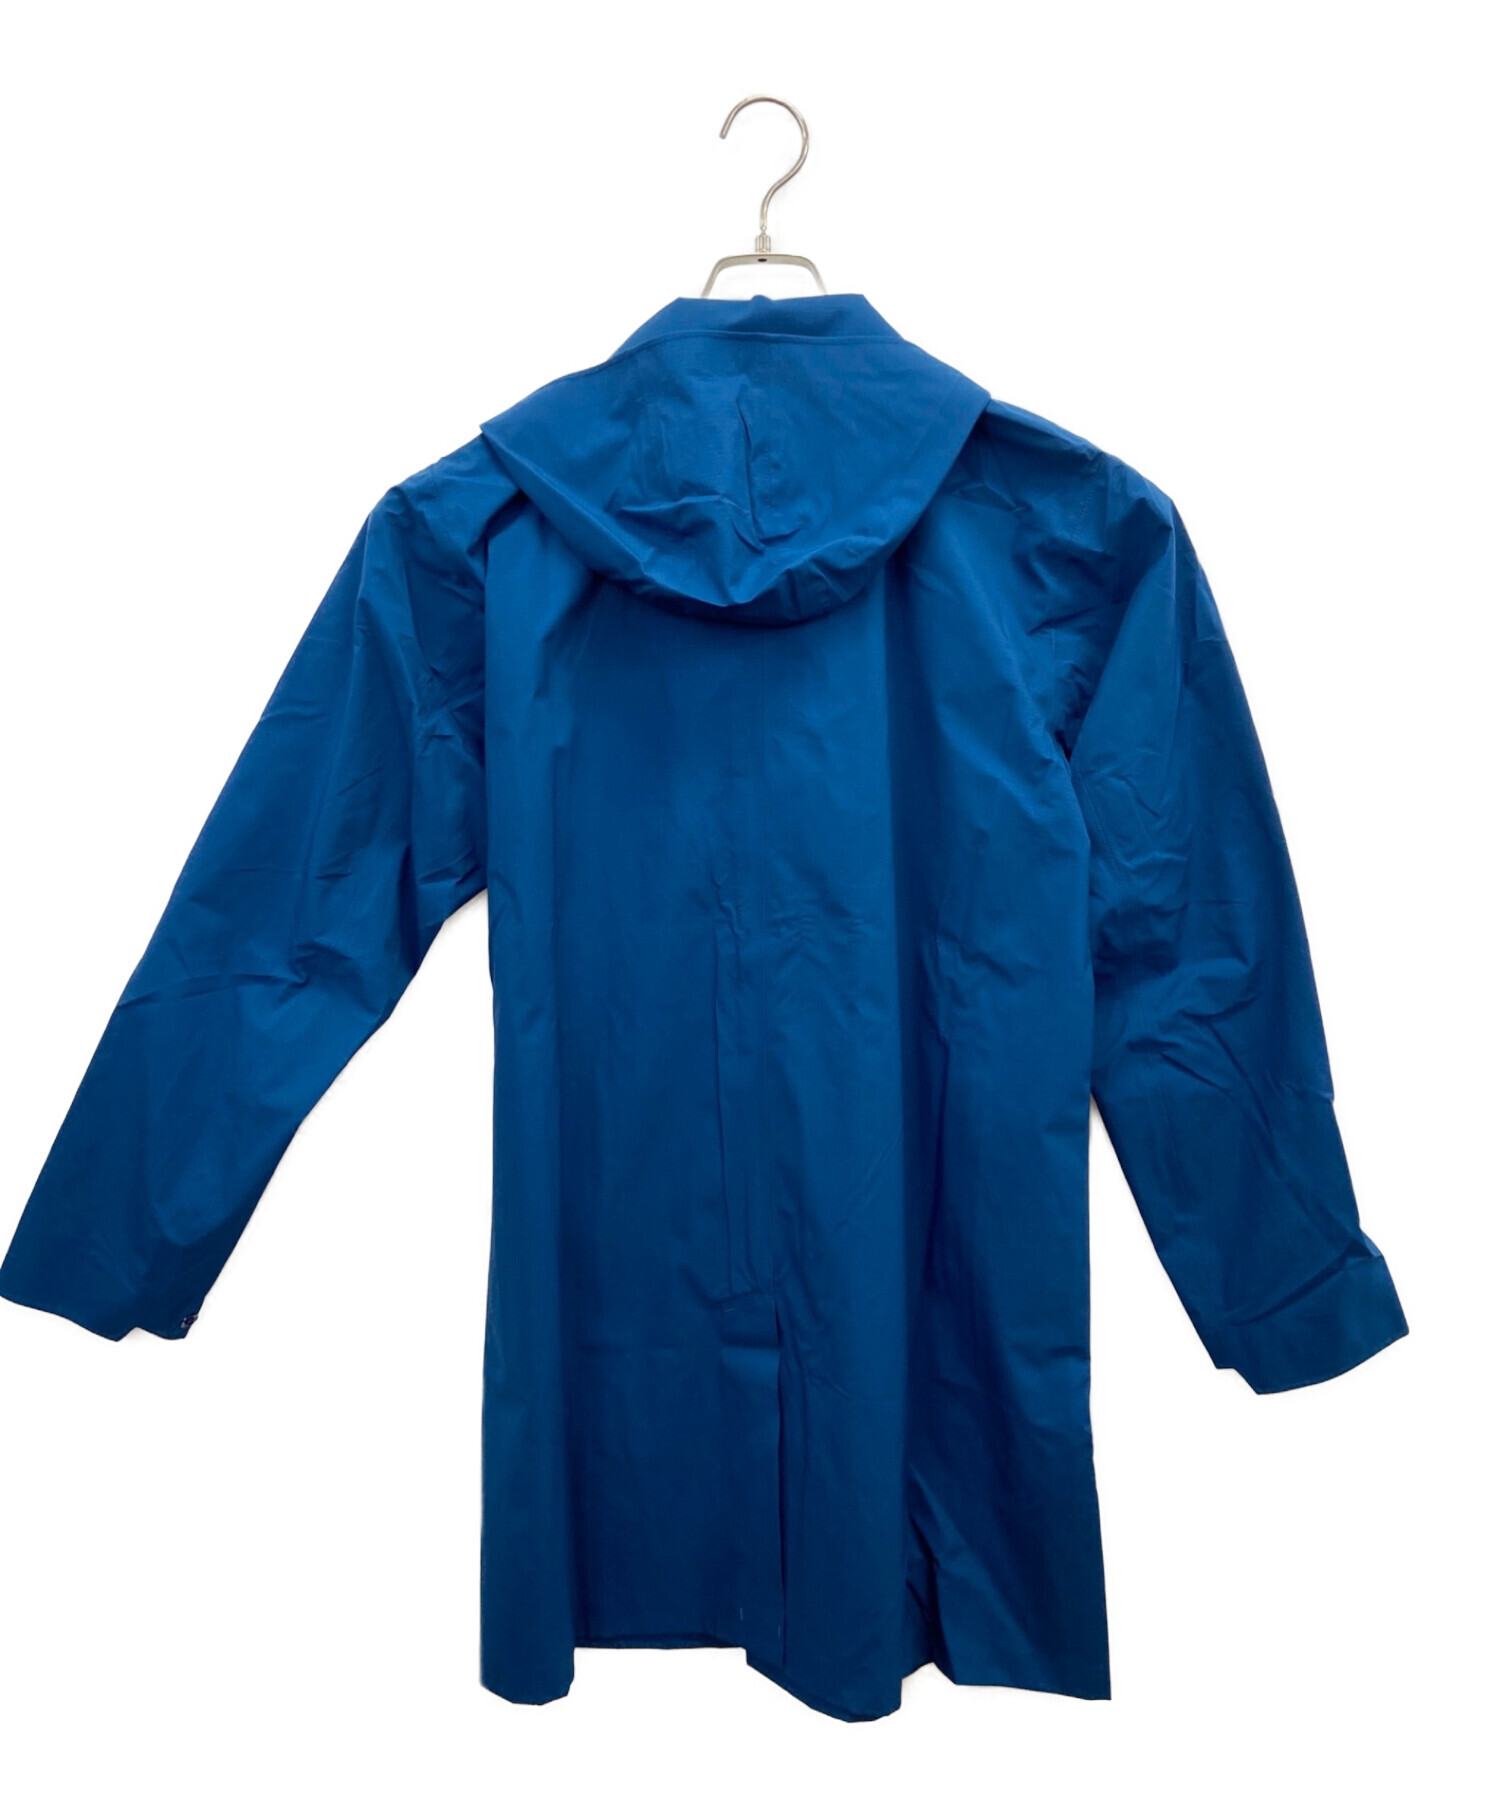 OAKLEY (オークリー) トラックジャケット ブルー サイズ:L 未使用品